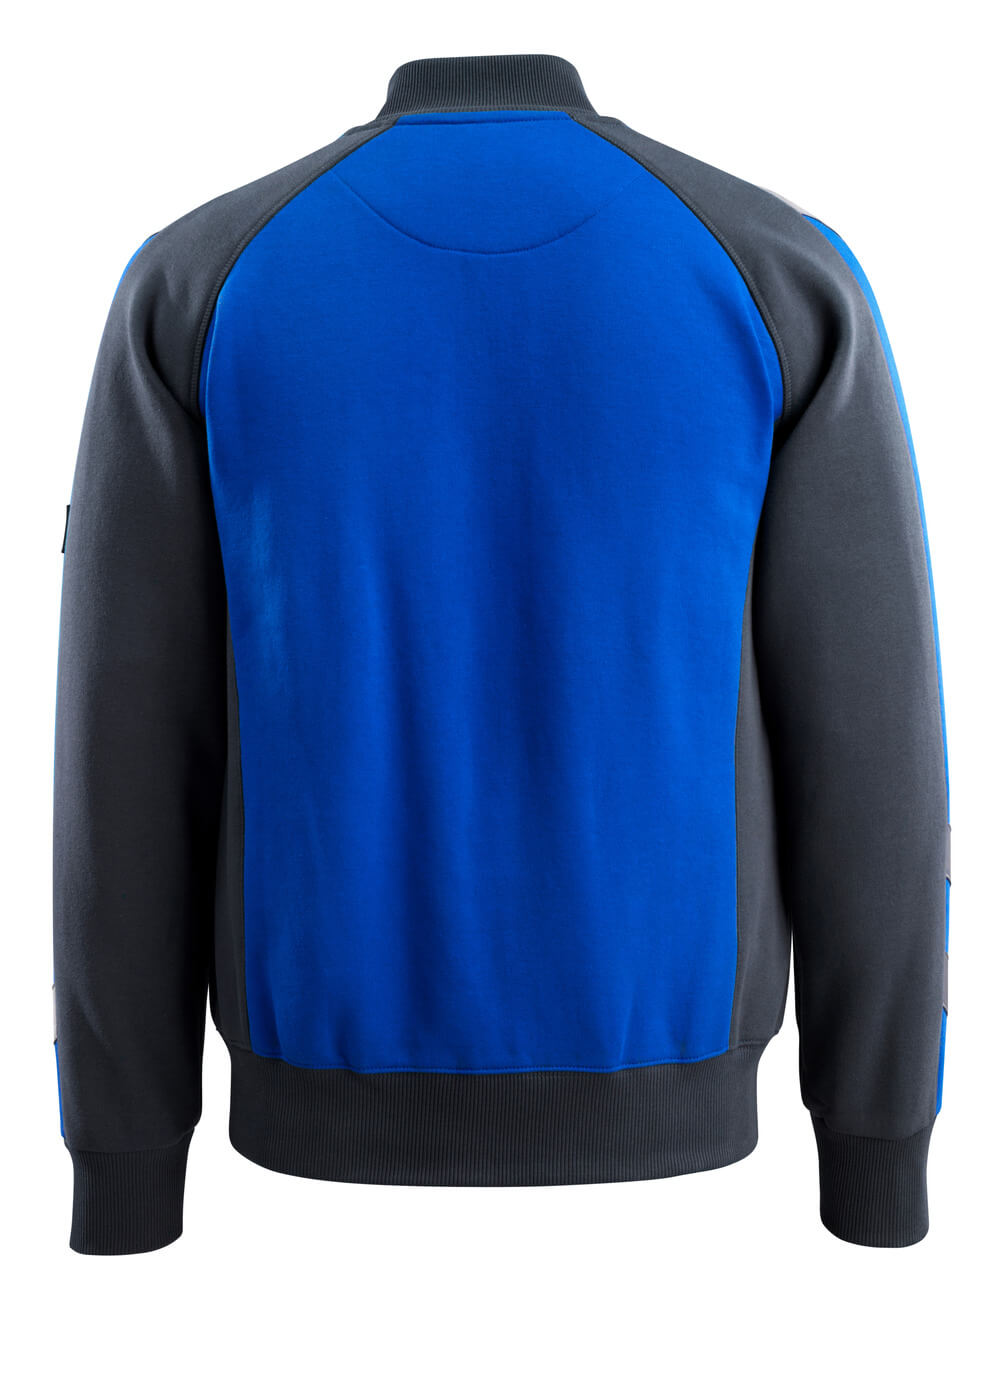 Sweatshirt mit Rei?verschluss UNIQUE Sweatshirt mit Rei?verschluss in Farbe Kornblau/Schwarzblau